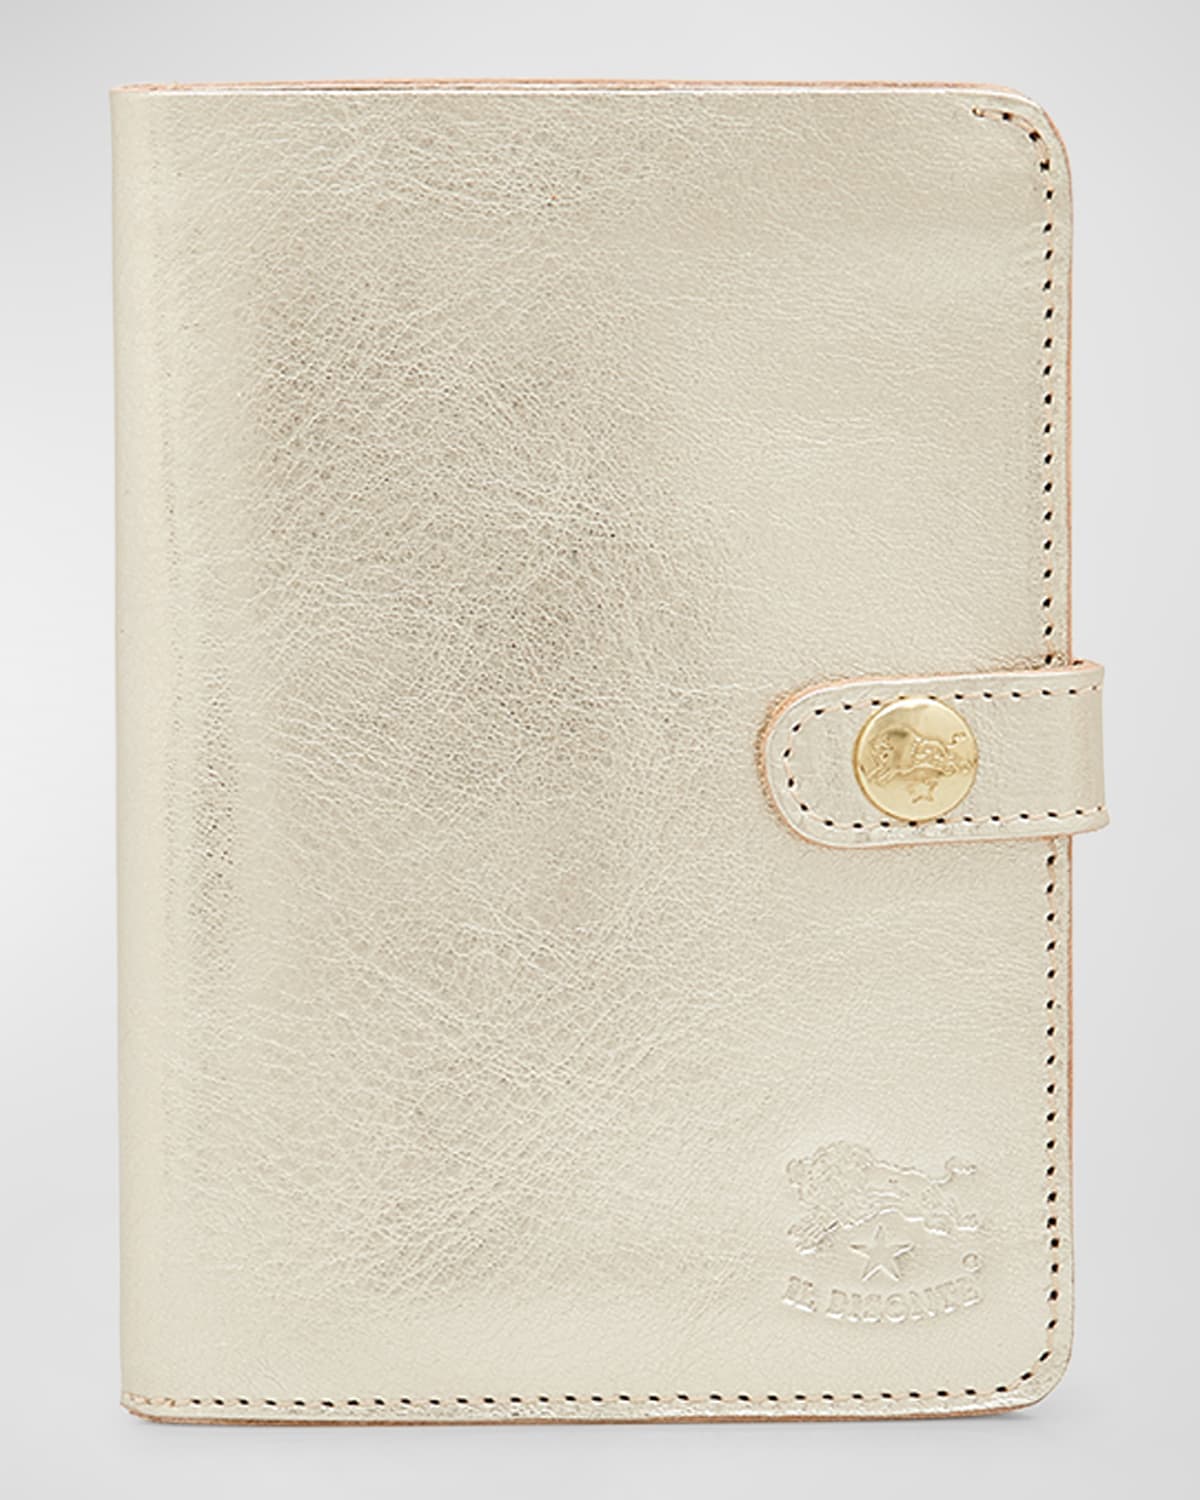 Medium Flap Leather Wallet